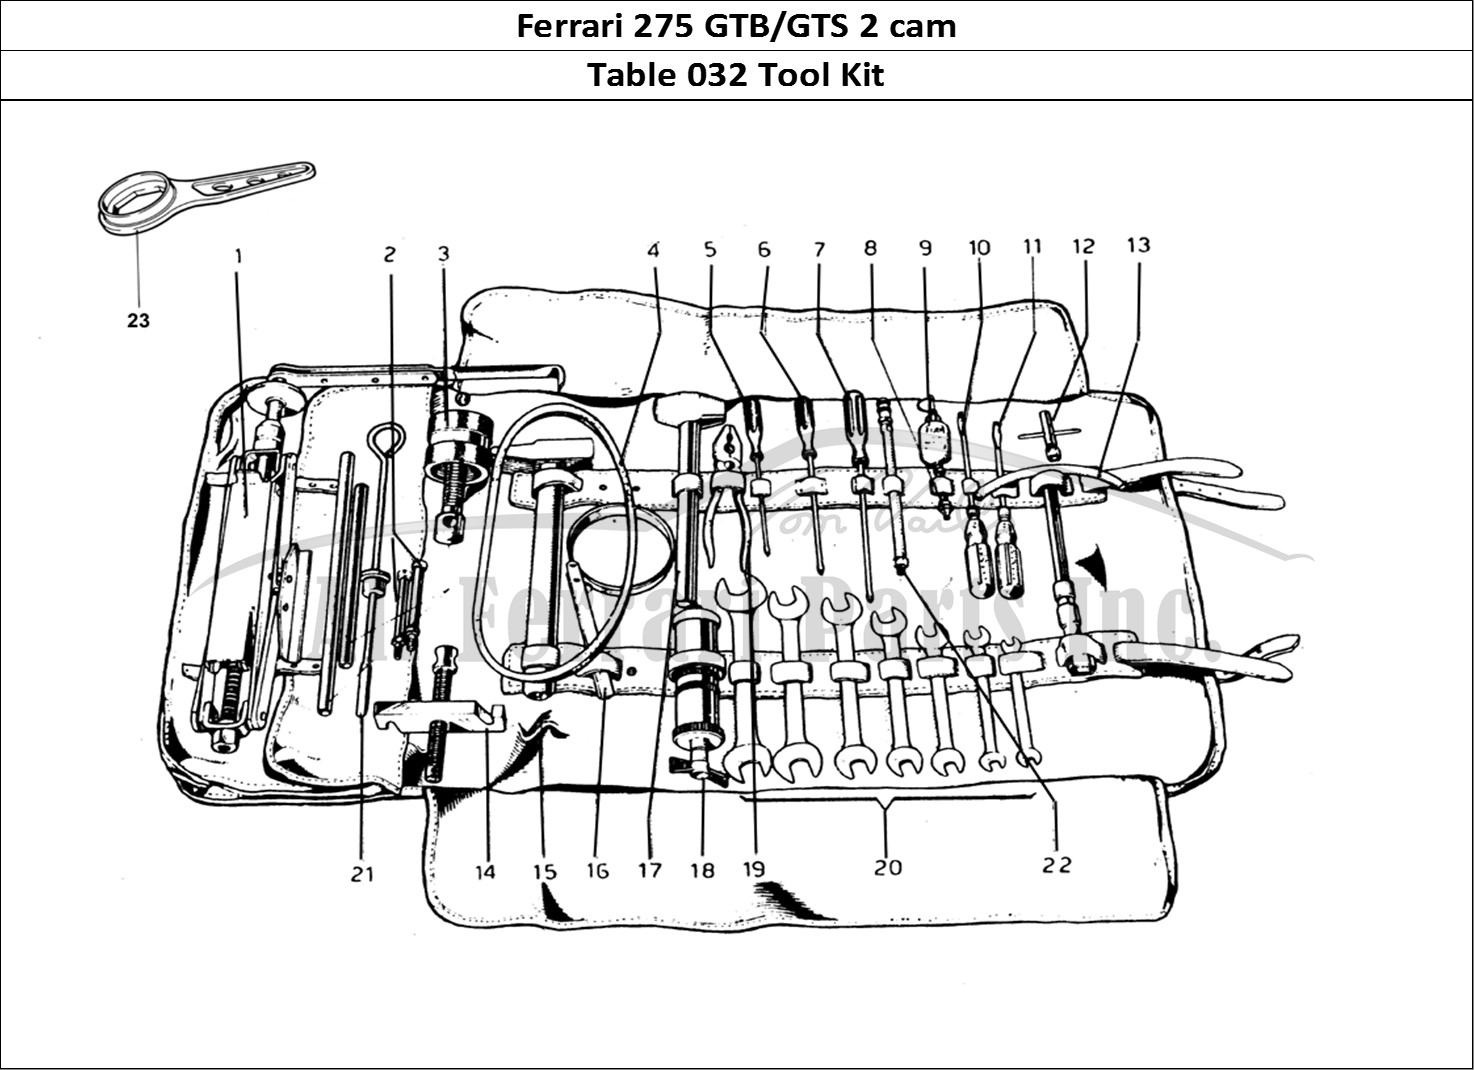 Ferrari Parts Ferrari 275 GTB/GTS 2 cam Page 032 Tool Kit